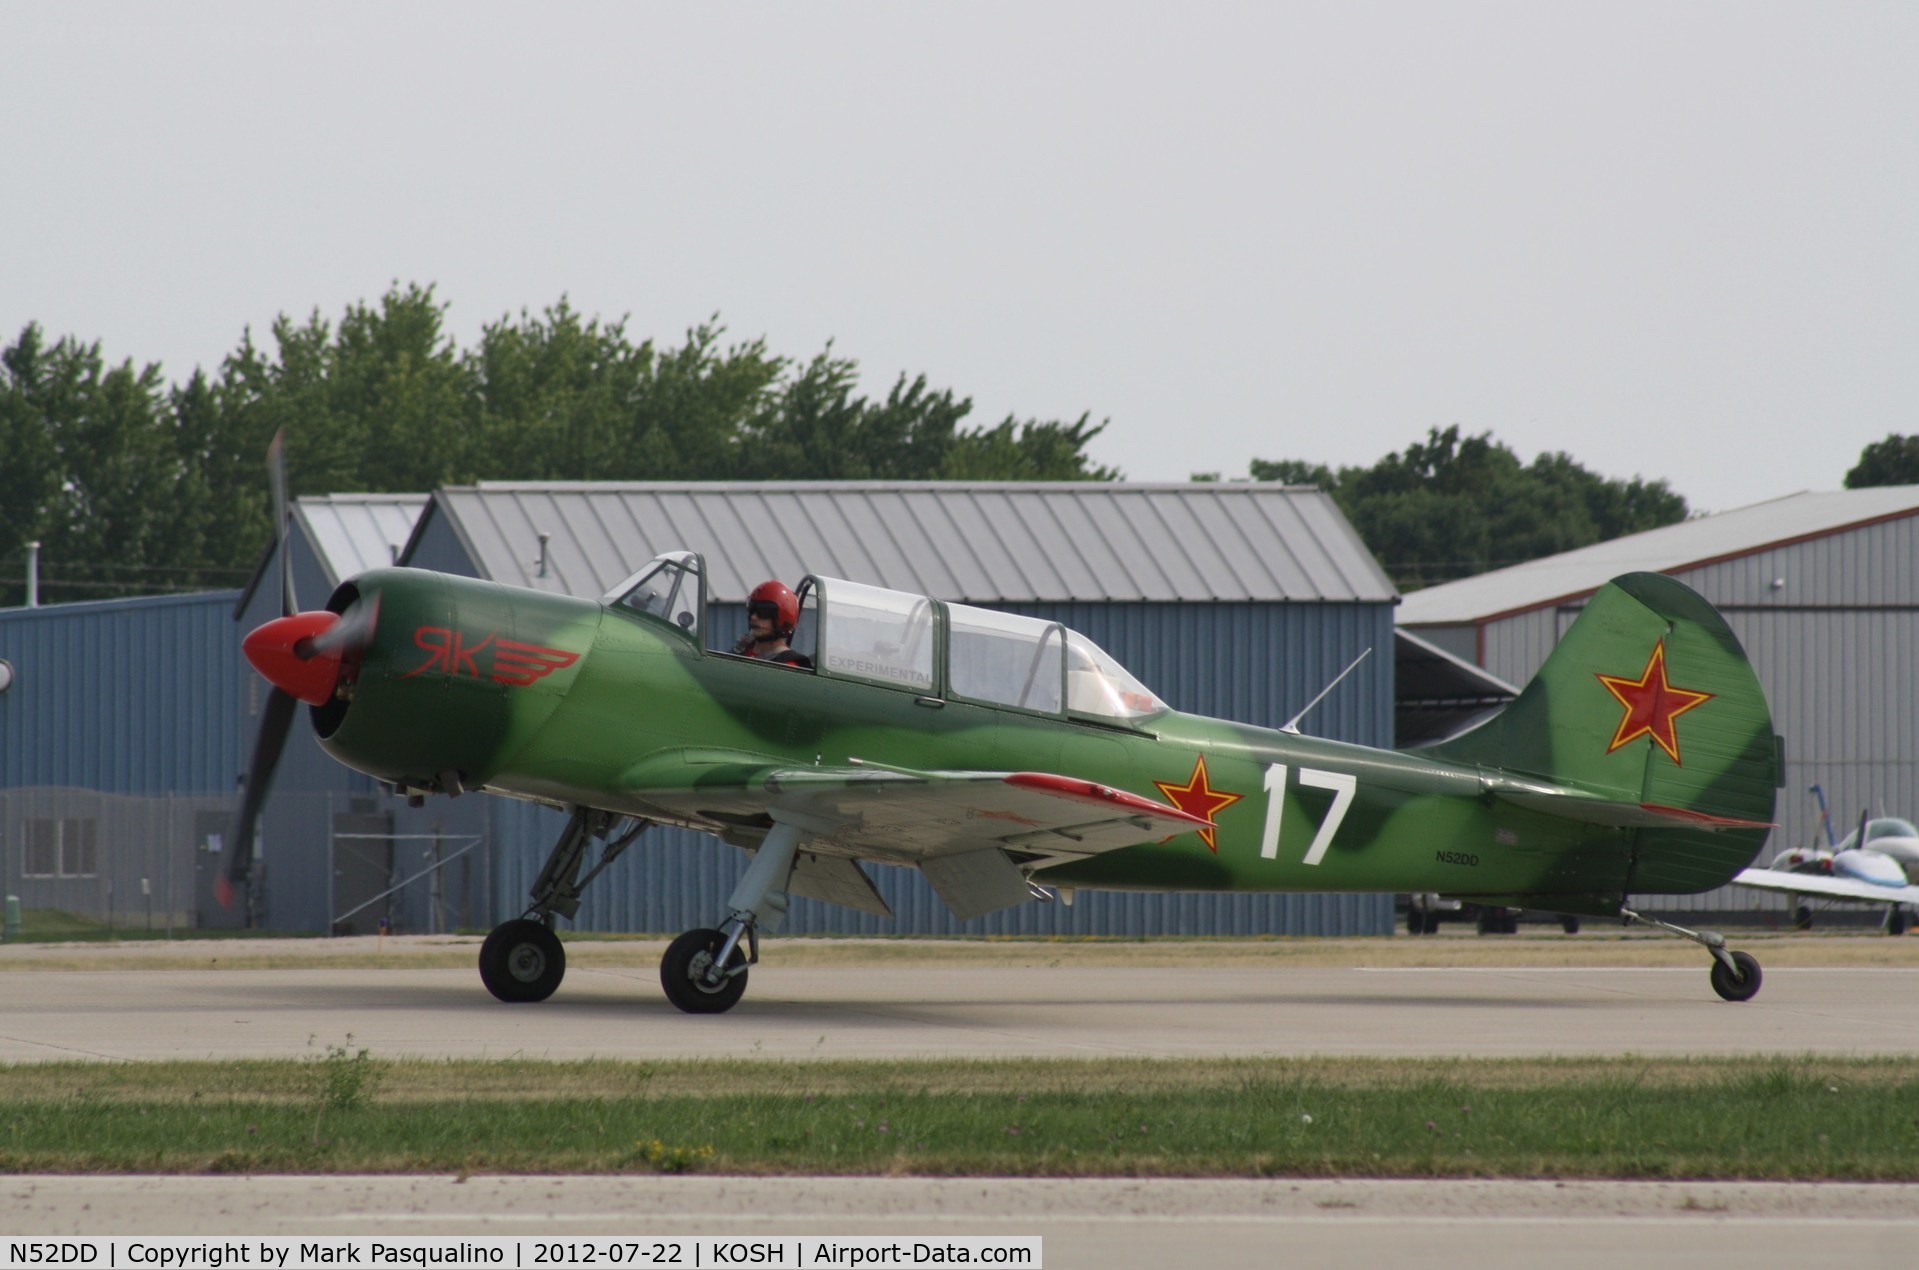 N52DD, 2002 Yakovlev (Aerostar) Yak-52TW C/N 0212404, YAK-52TW